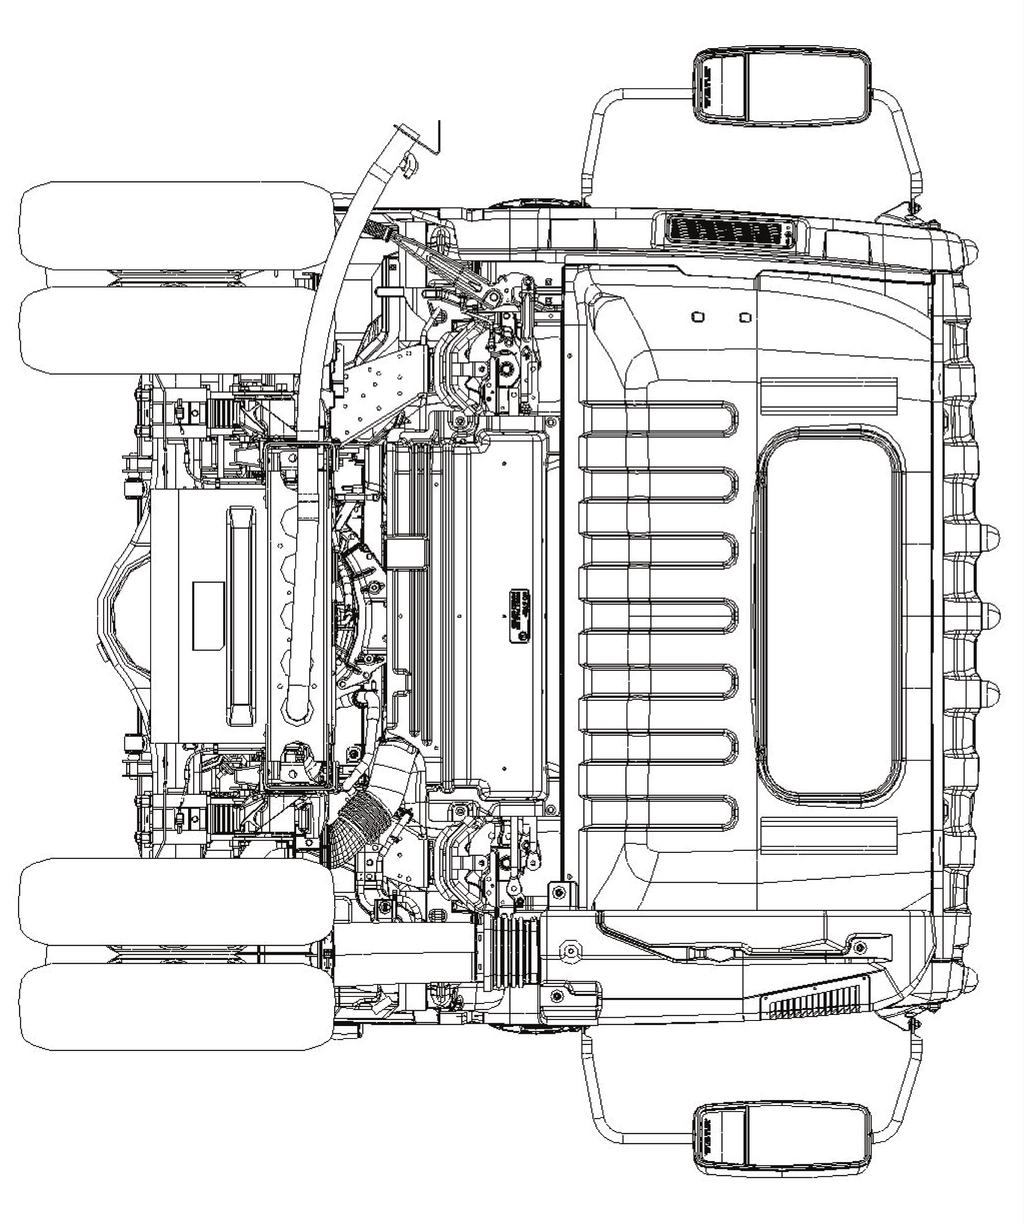 2017 Isuzu Truck Rear View Fuel Fill Dimension: